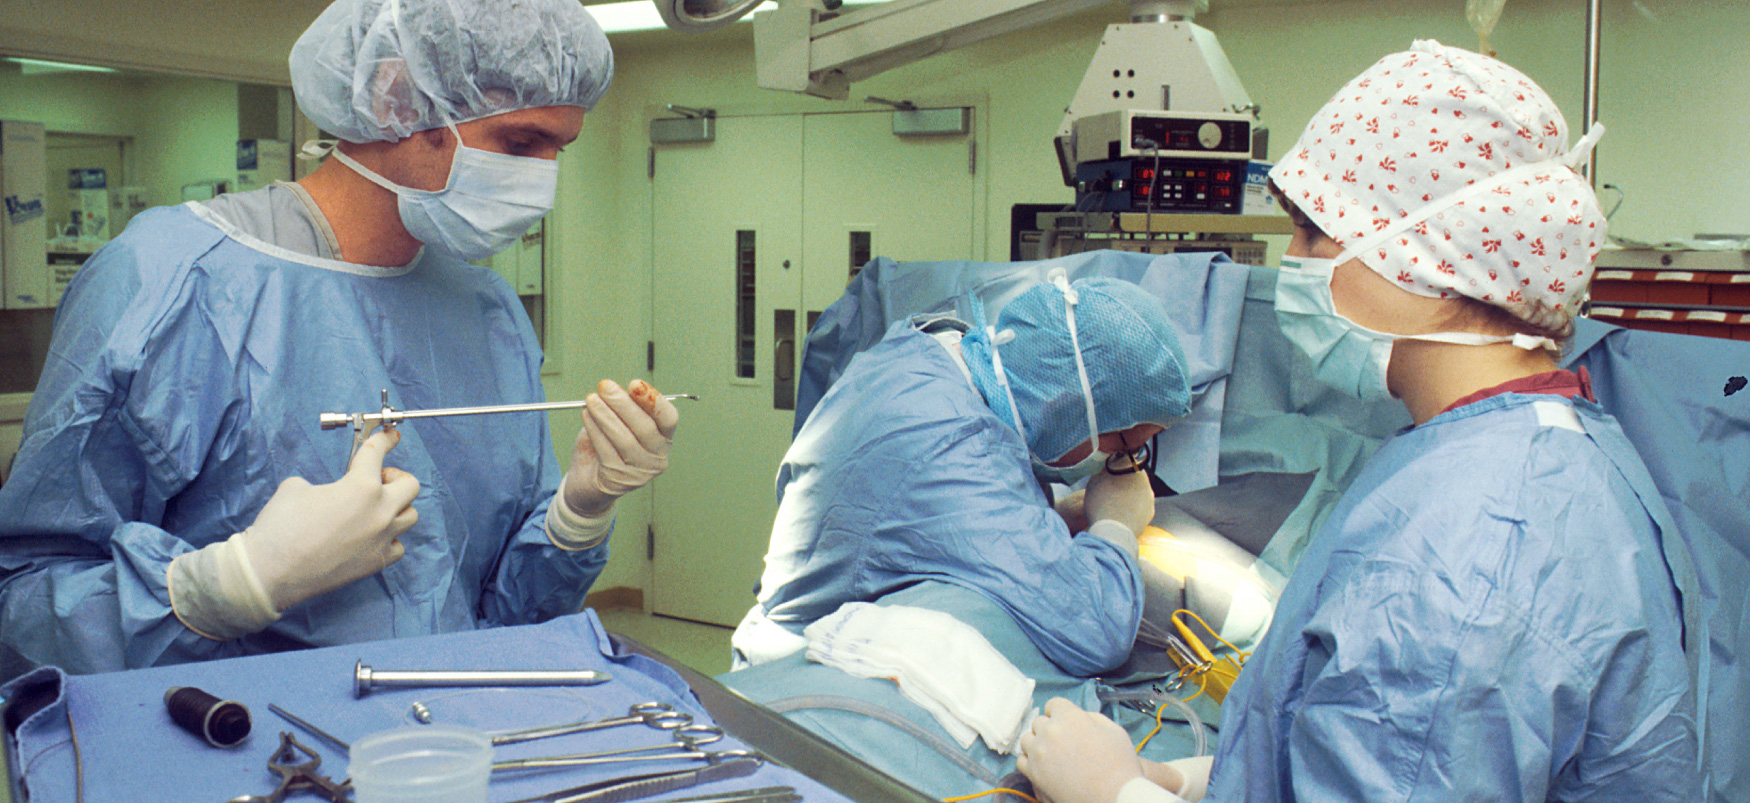 Três profissionais médicos usando equipamento de proteção individual preparam instrumentos em uma sala de cirurgia.